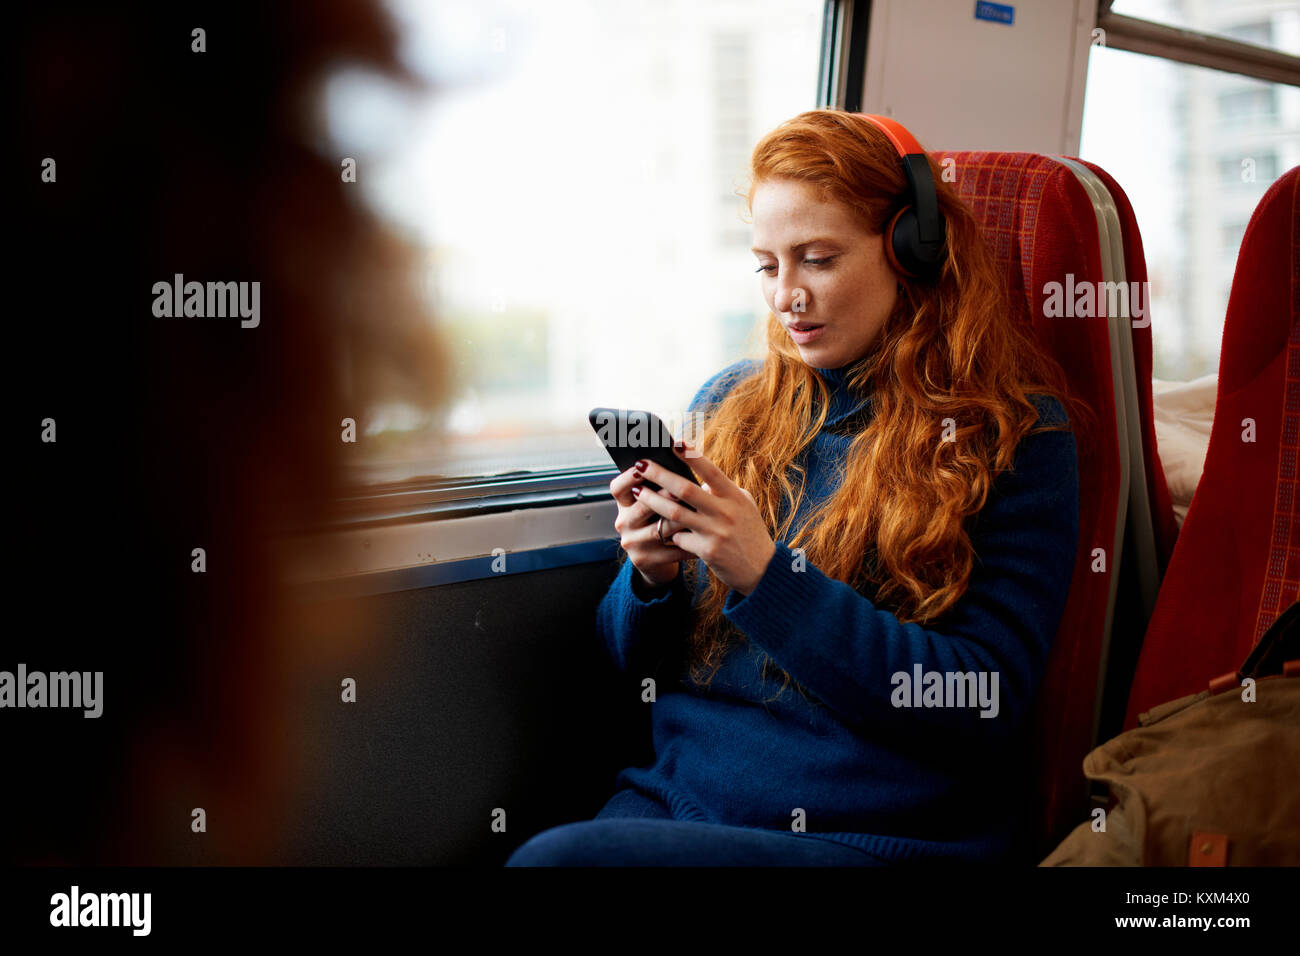 Frau auf dem Zug hören die Musik auf Handy mit Kopfhörer, London Stockfoto